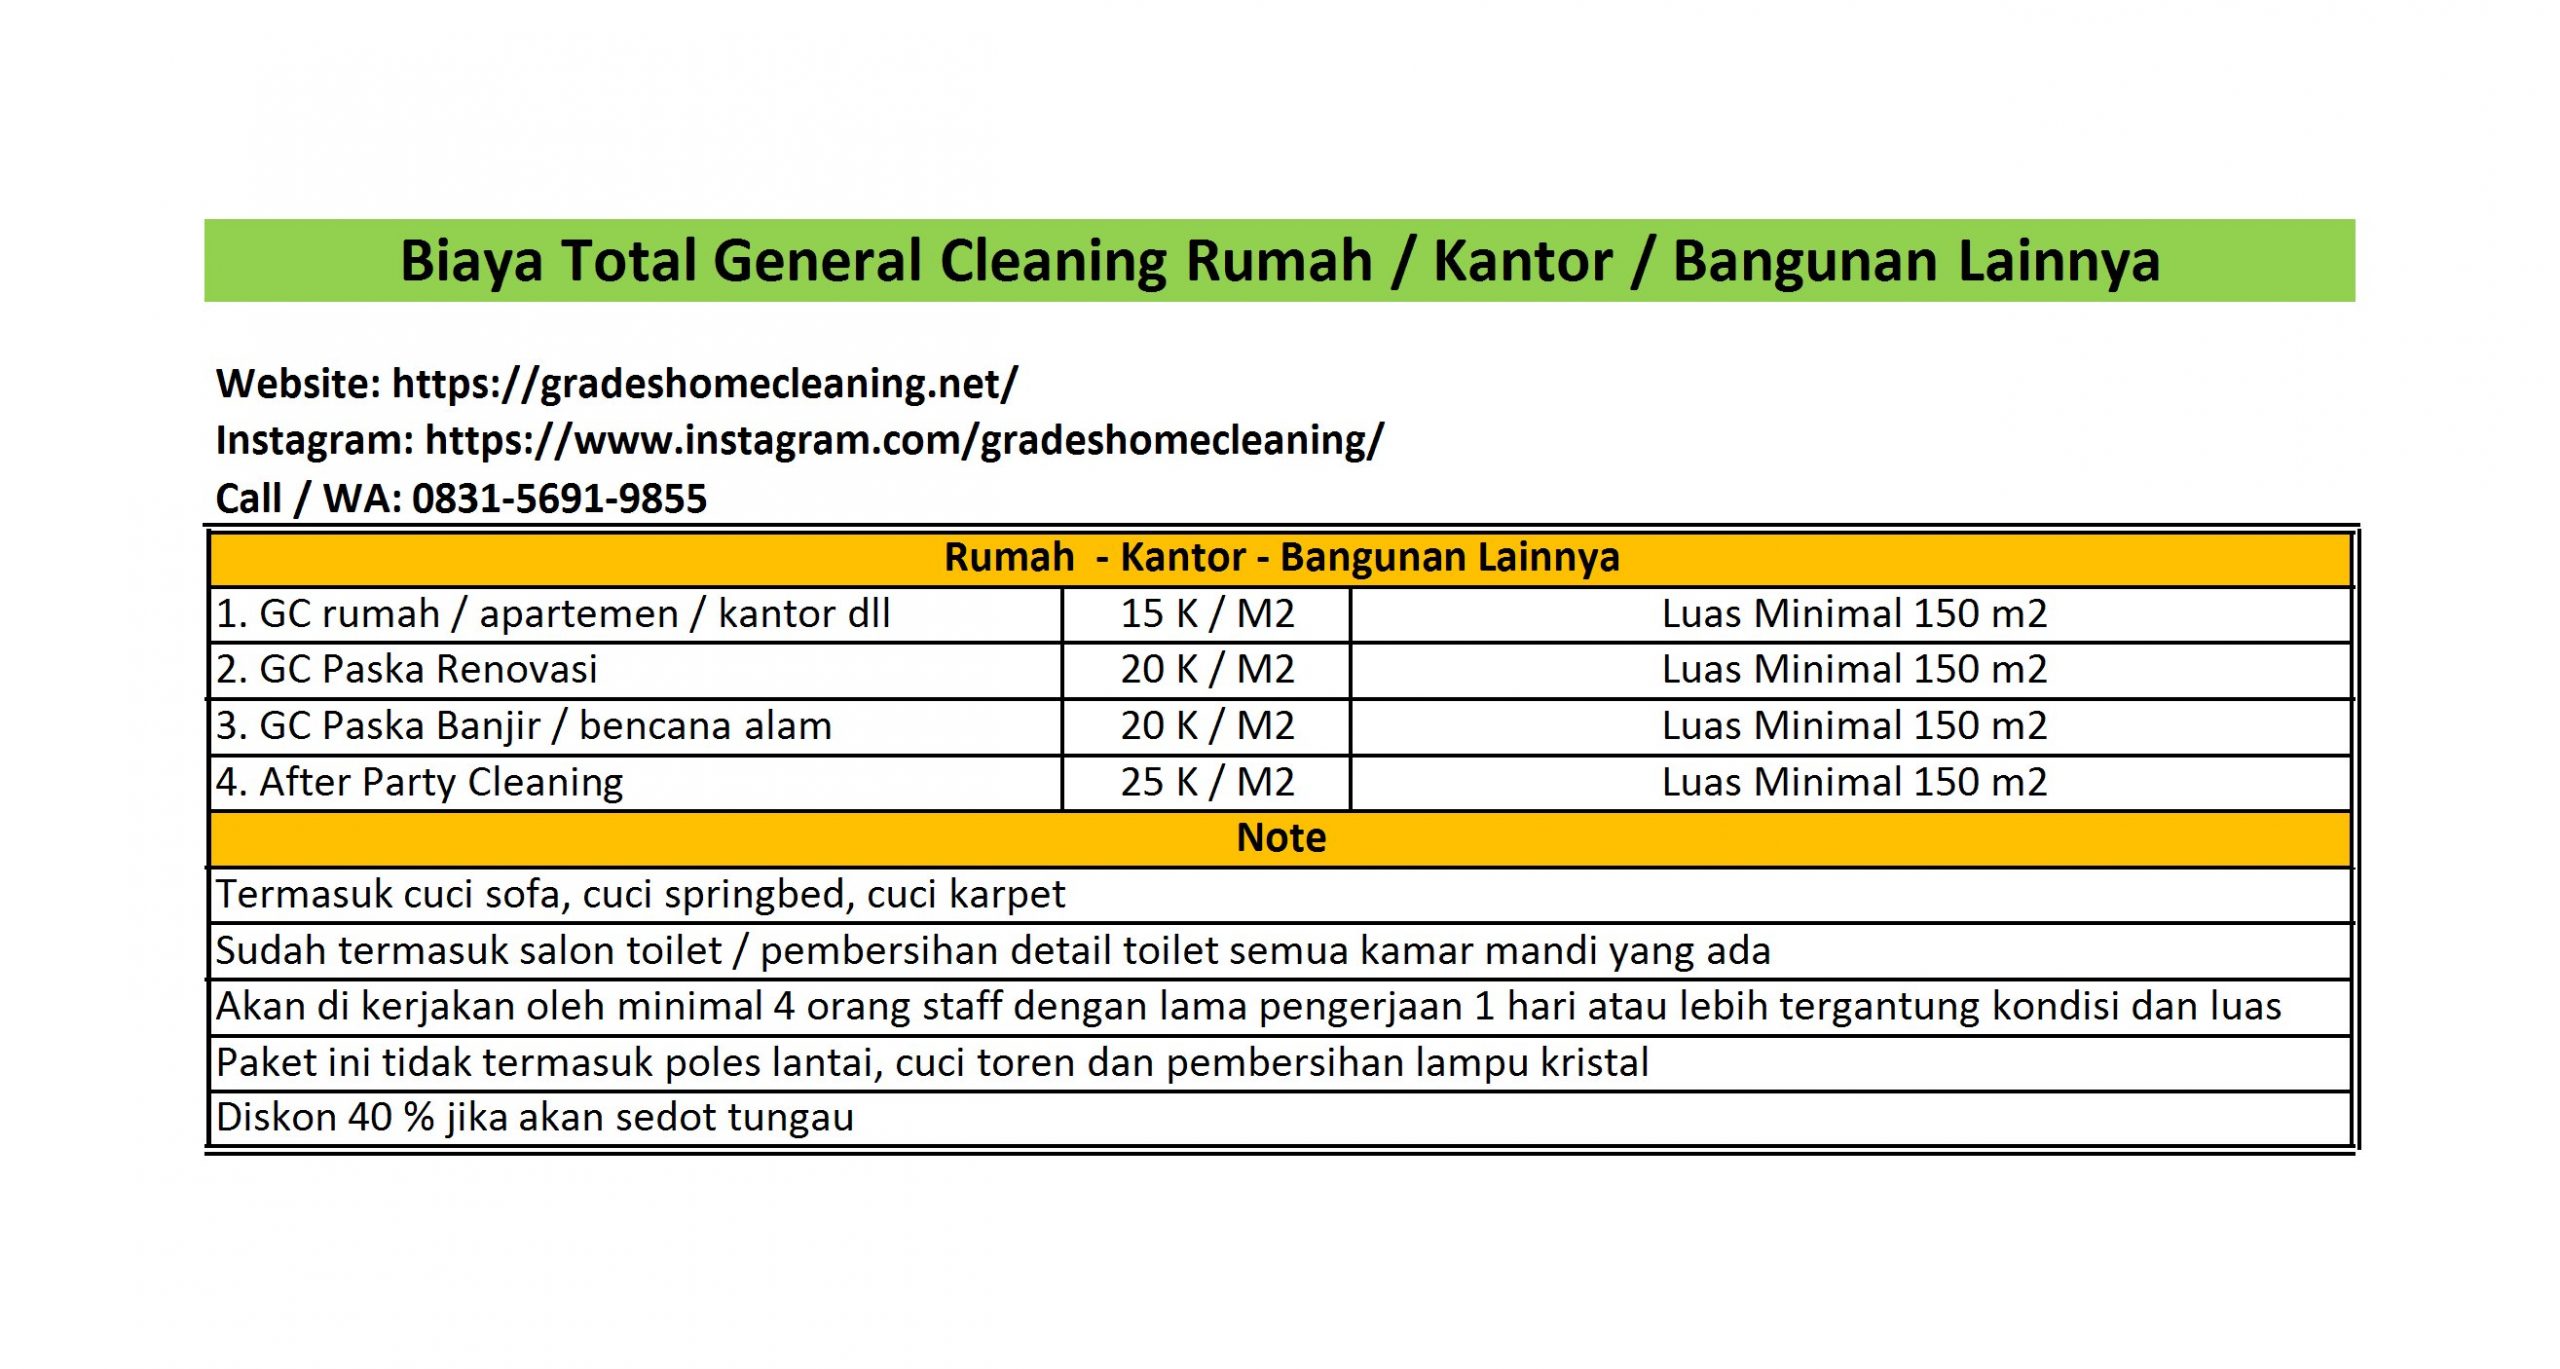 biaya one day general cleaning di tangerang